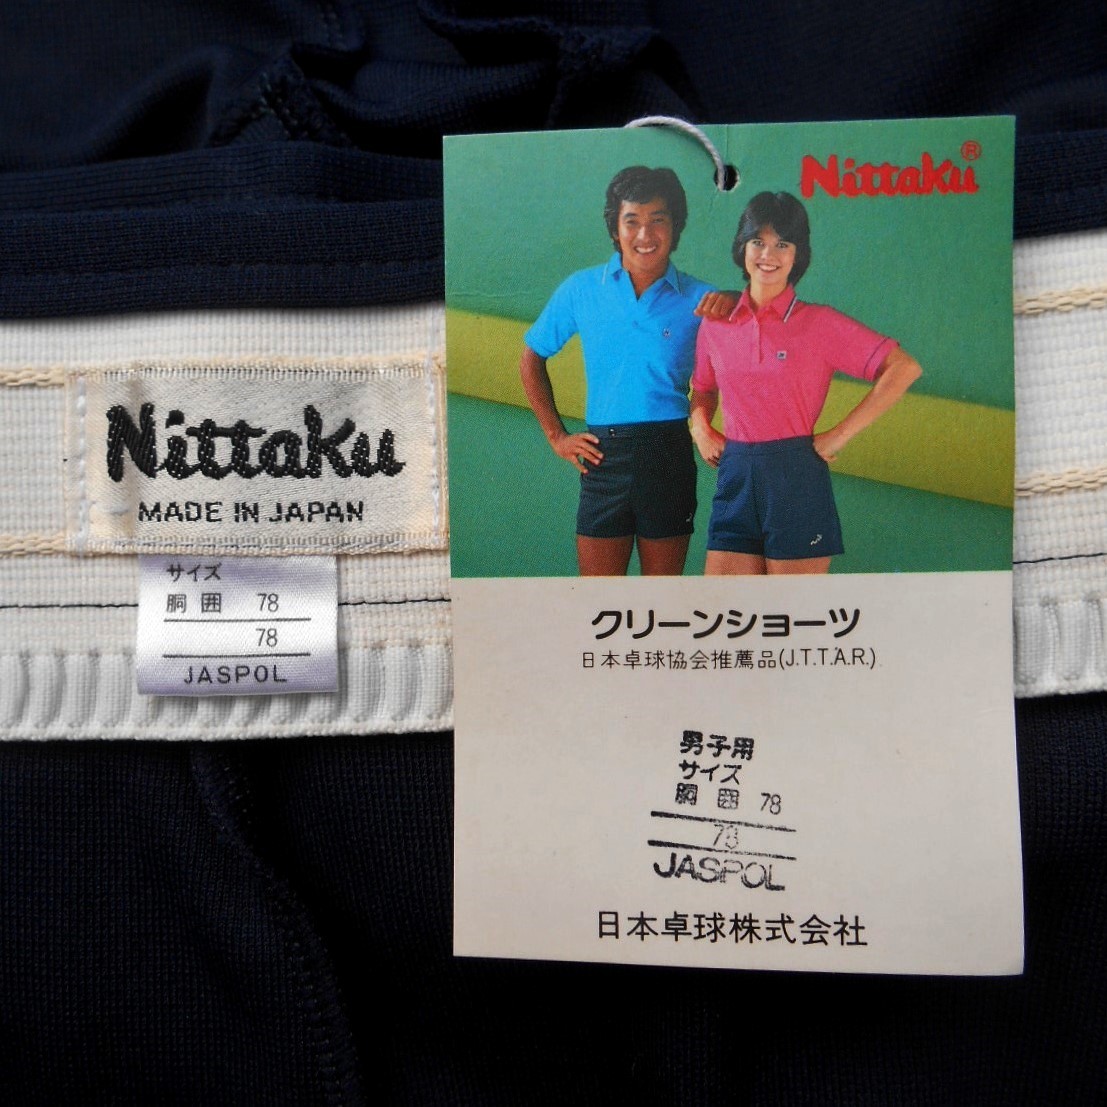  не использовался \'80s Nittakunitak шорты 78 полиэстер джерси темно-синий темно-синий L сделано в Японии неиспользуемый товар Япония настольный теннис акционерное общество - -ta-